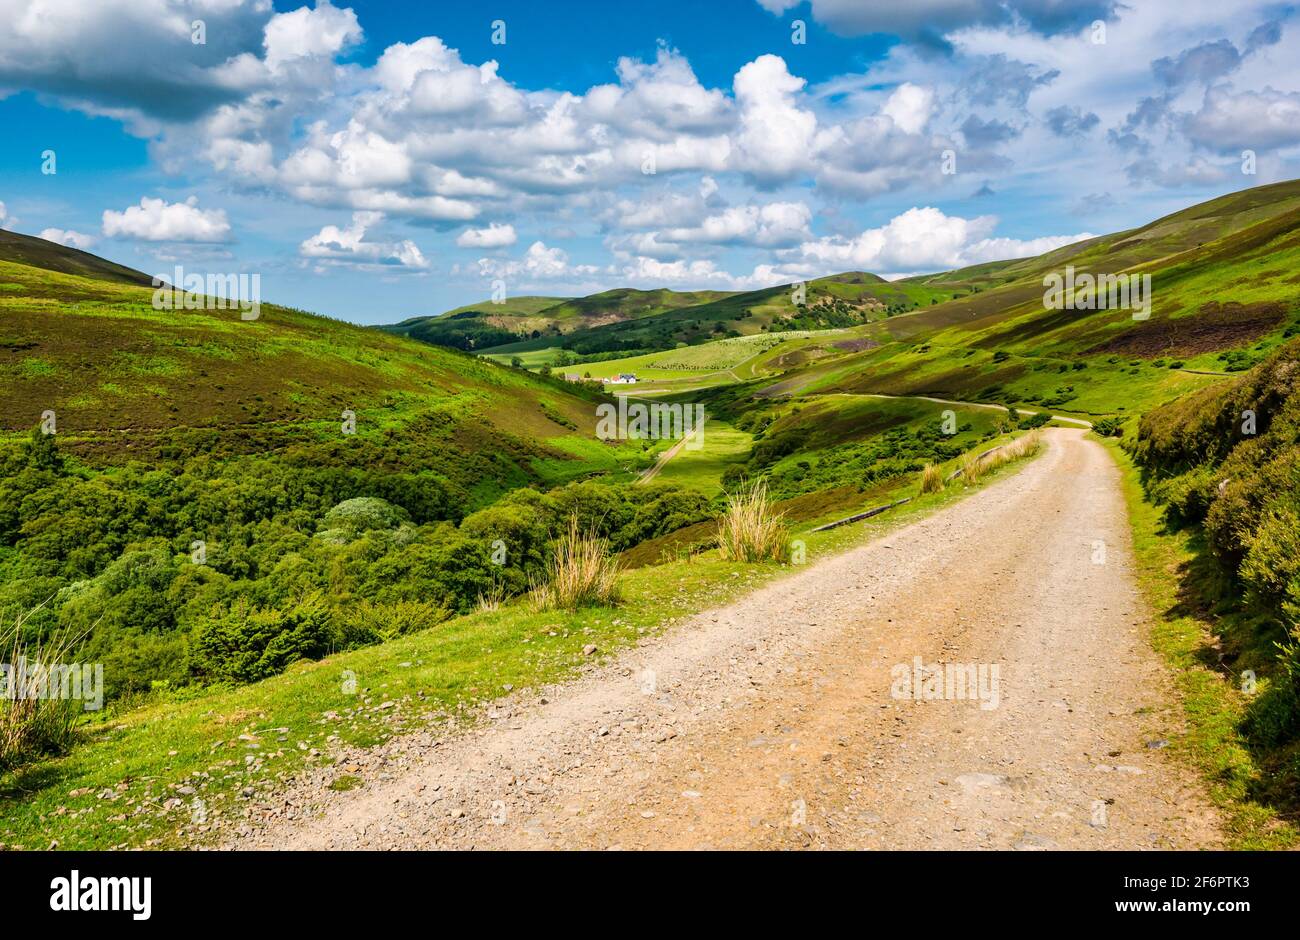 Pista de tierra que conduce por el valle, Lammermuir Hills, East Lothian, Escocia, Reino Unido Foto de stock